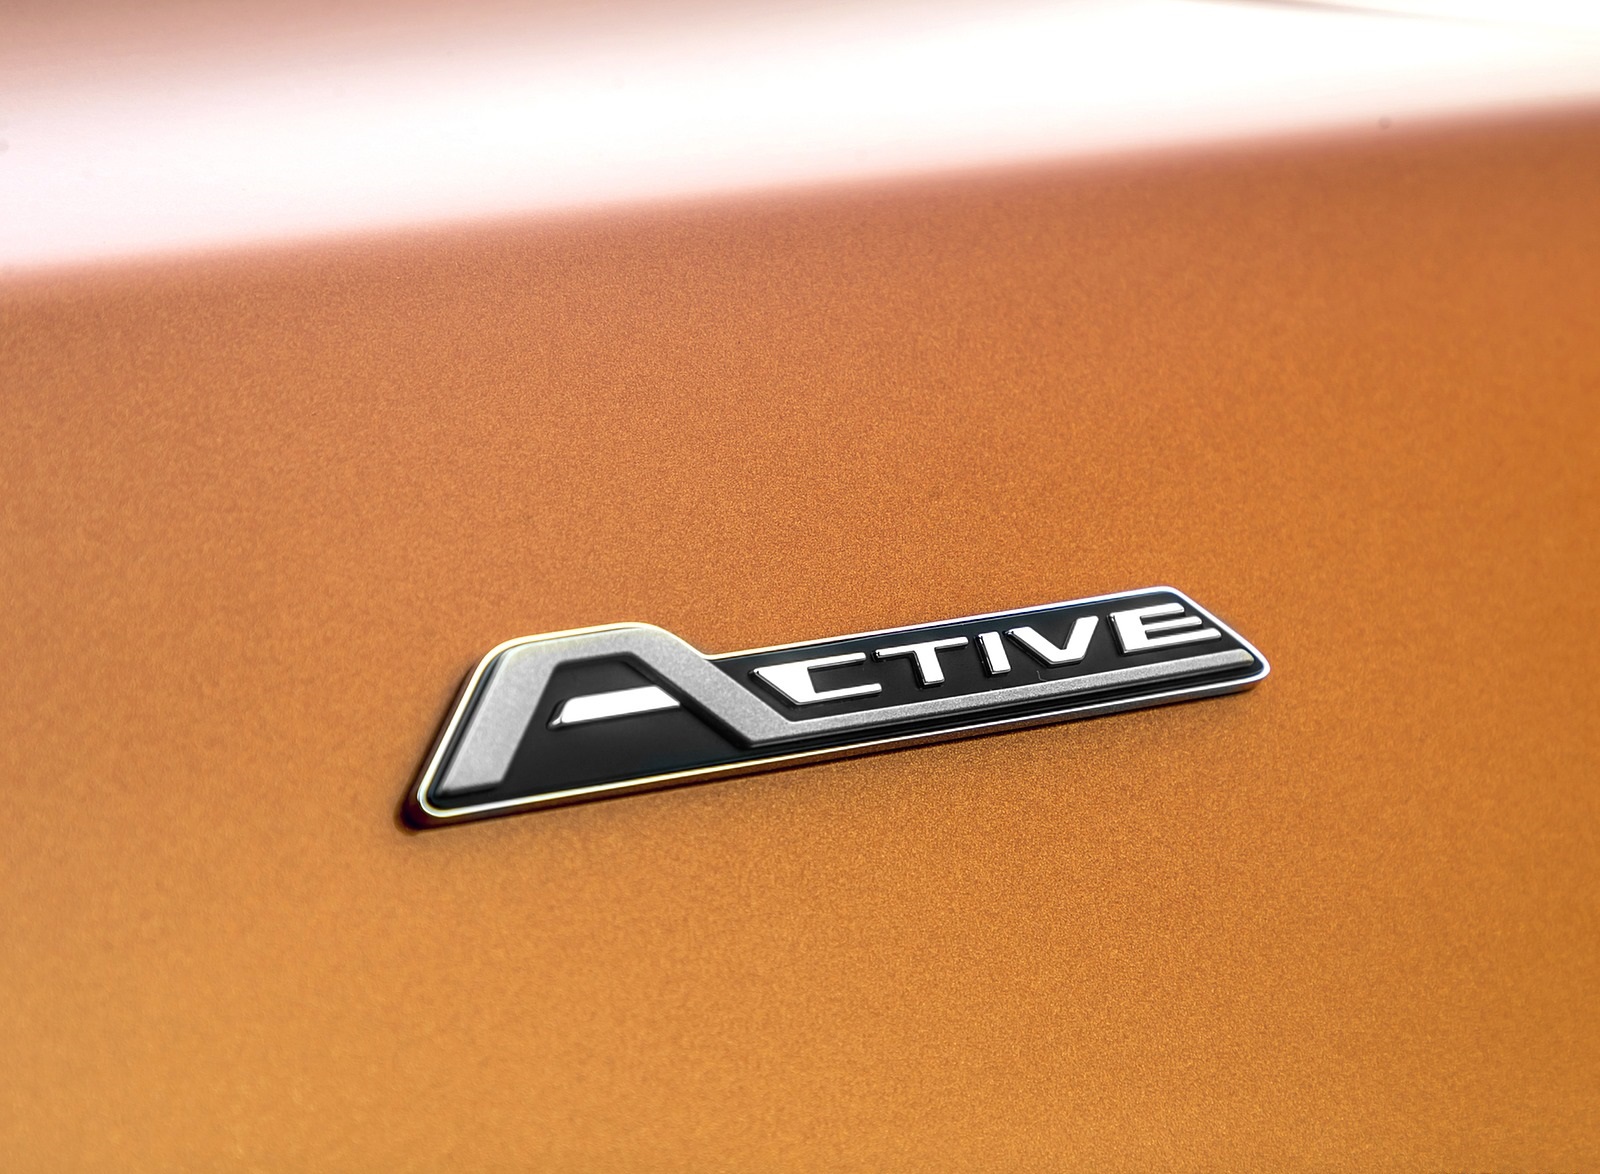 2019 Ford Focus Active 5-Door (Color: Orange Glow) Badge Wallpapers #84 of 118